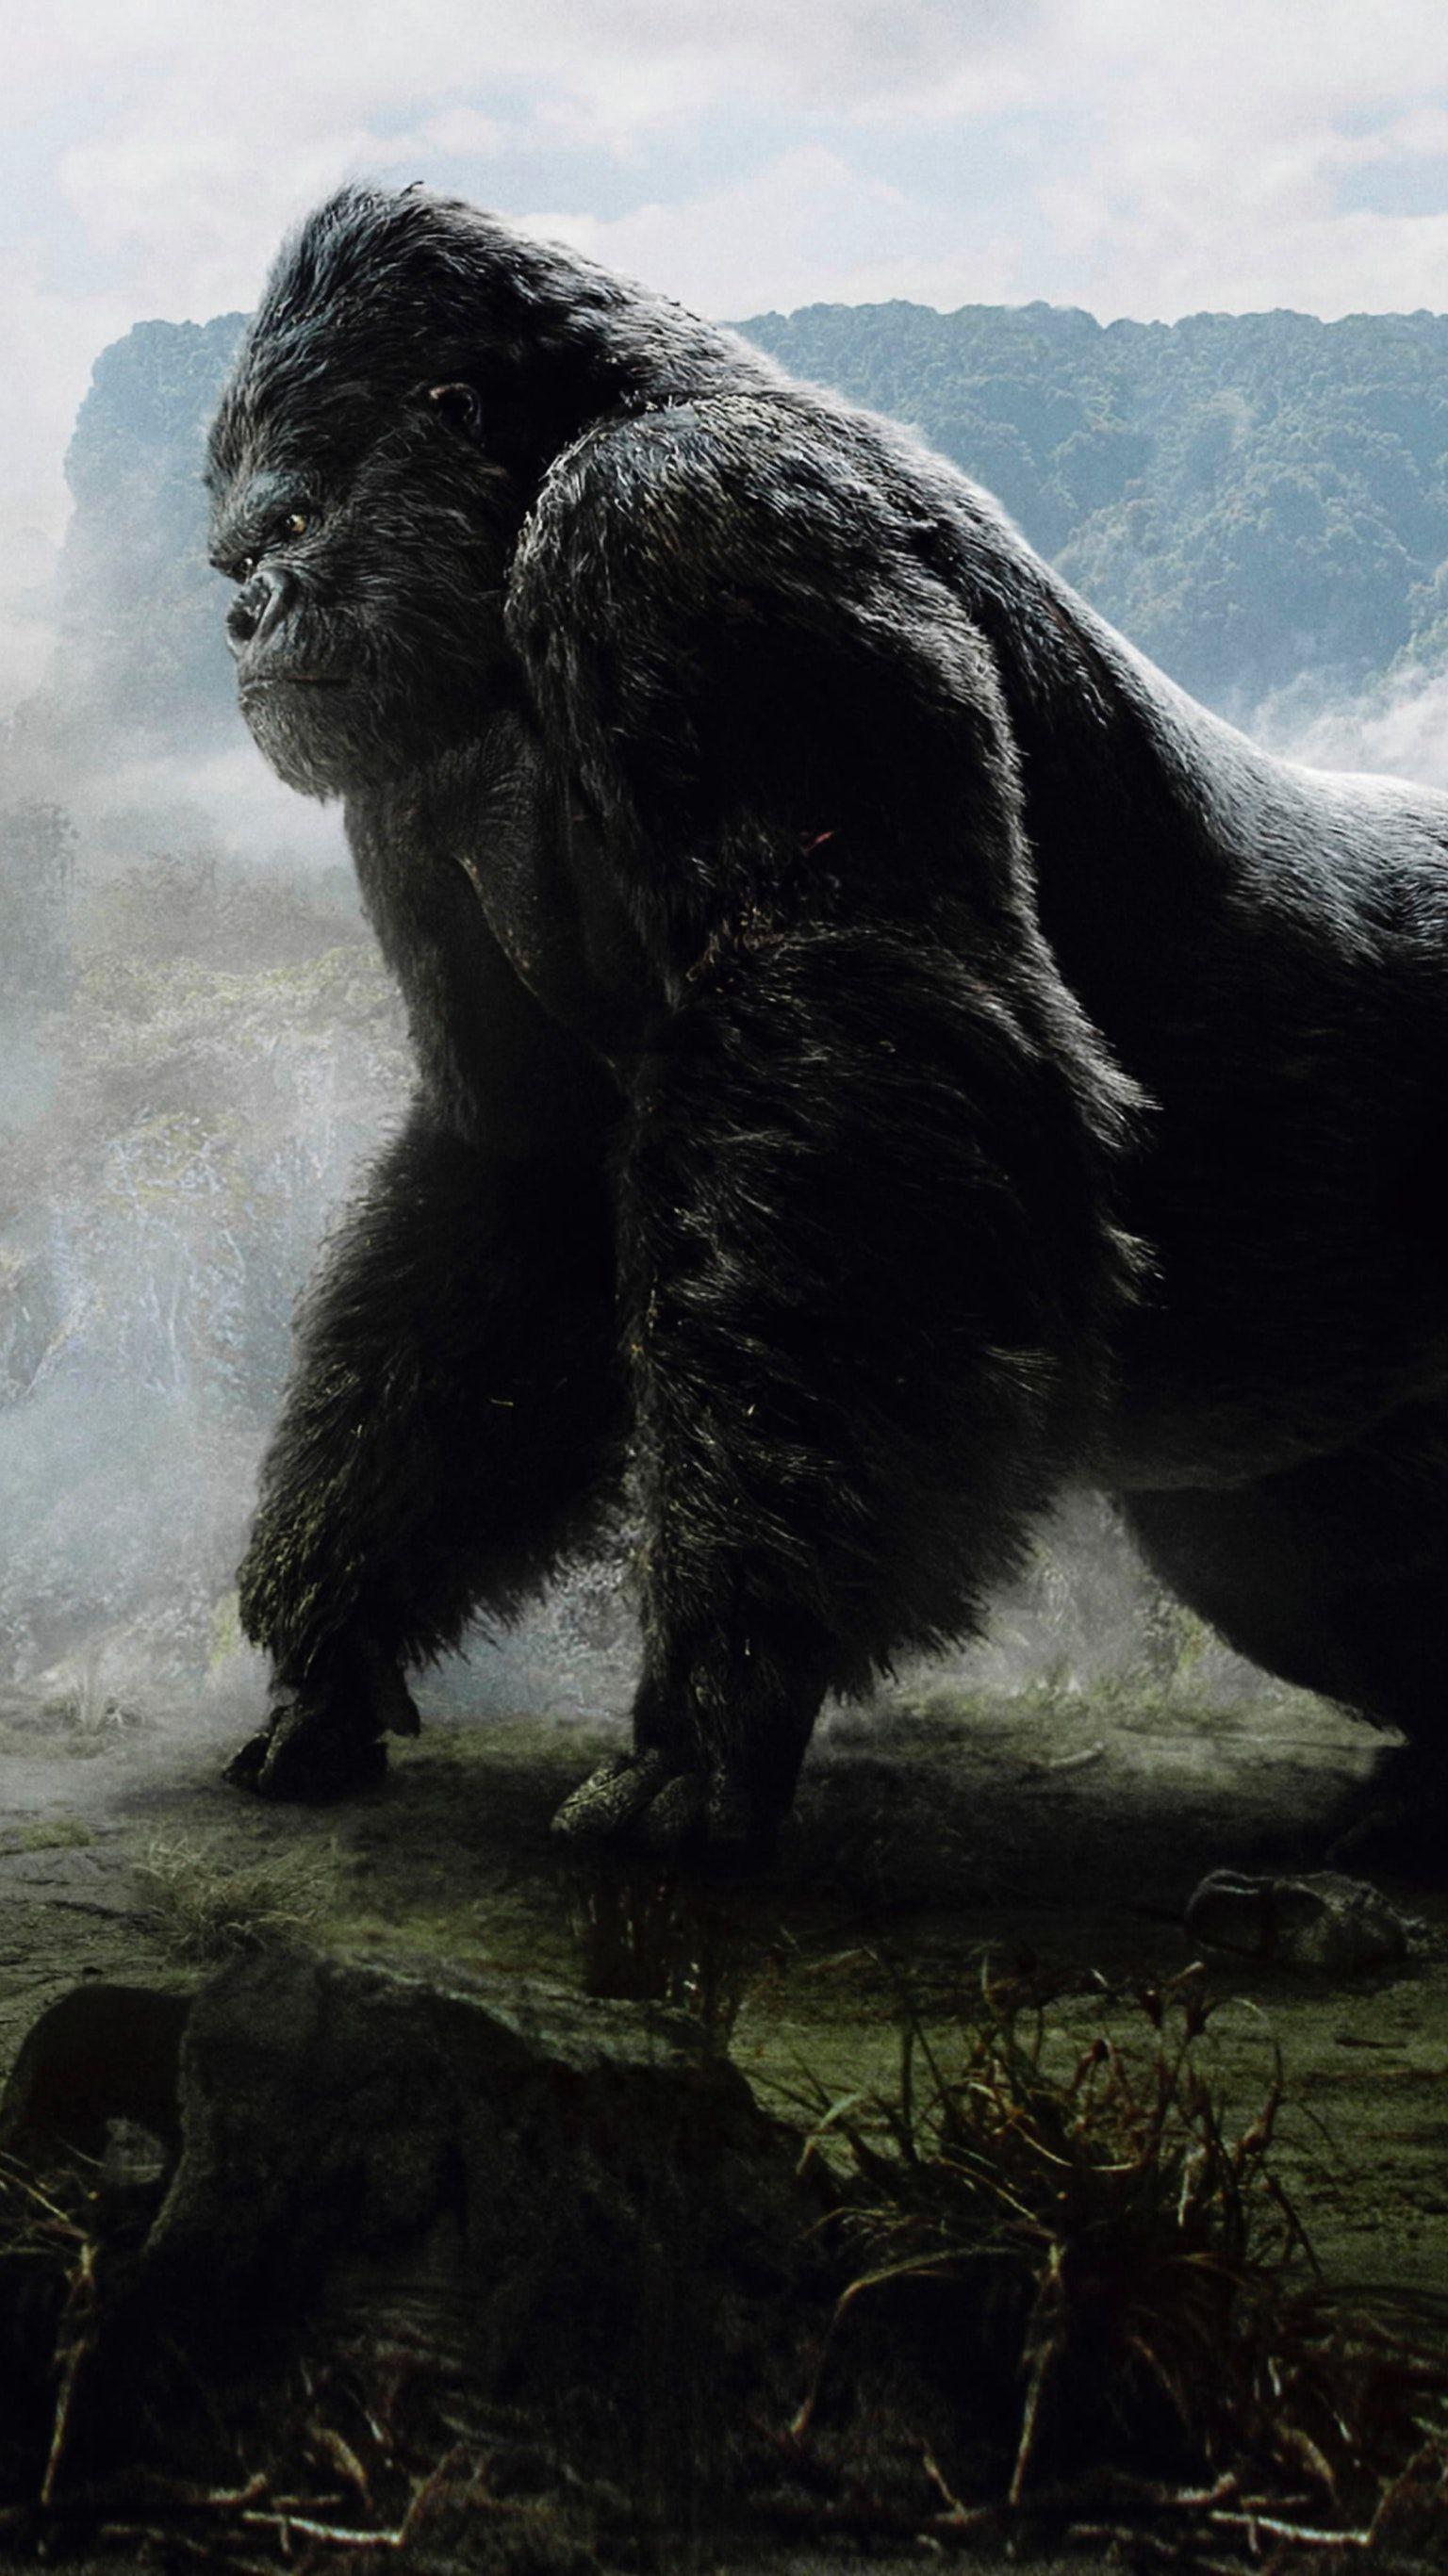 King Kong Axe Godzilla vs Kong Movie 2021 Wallpaper 4K 83091